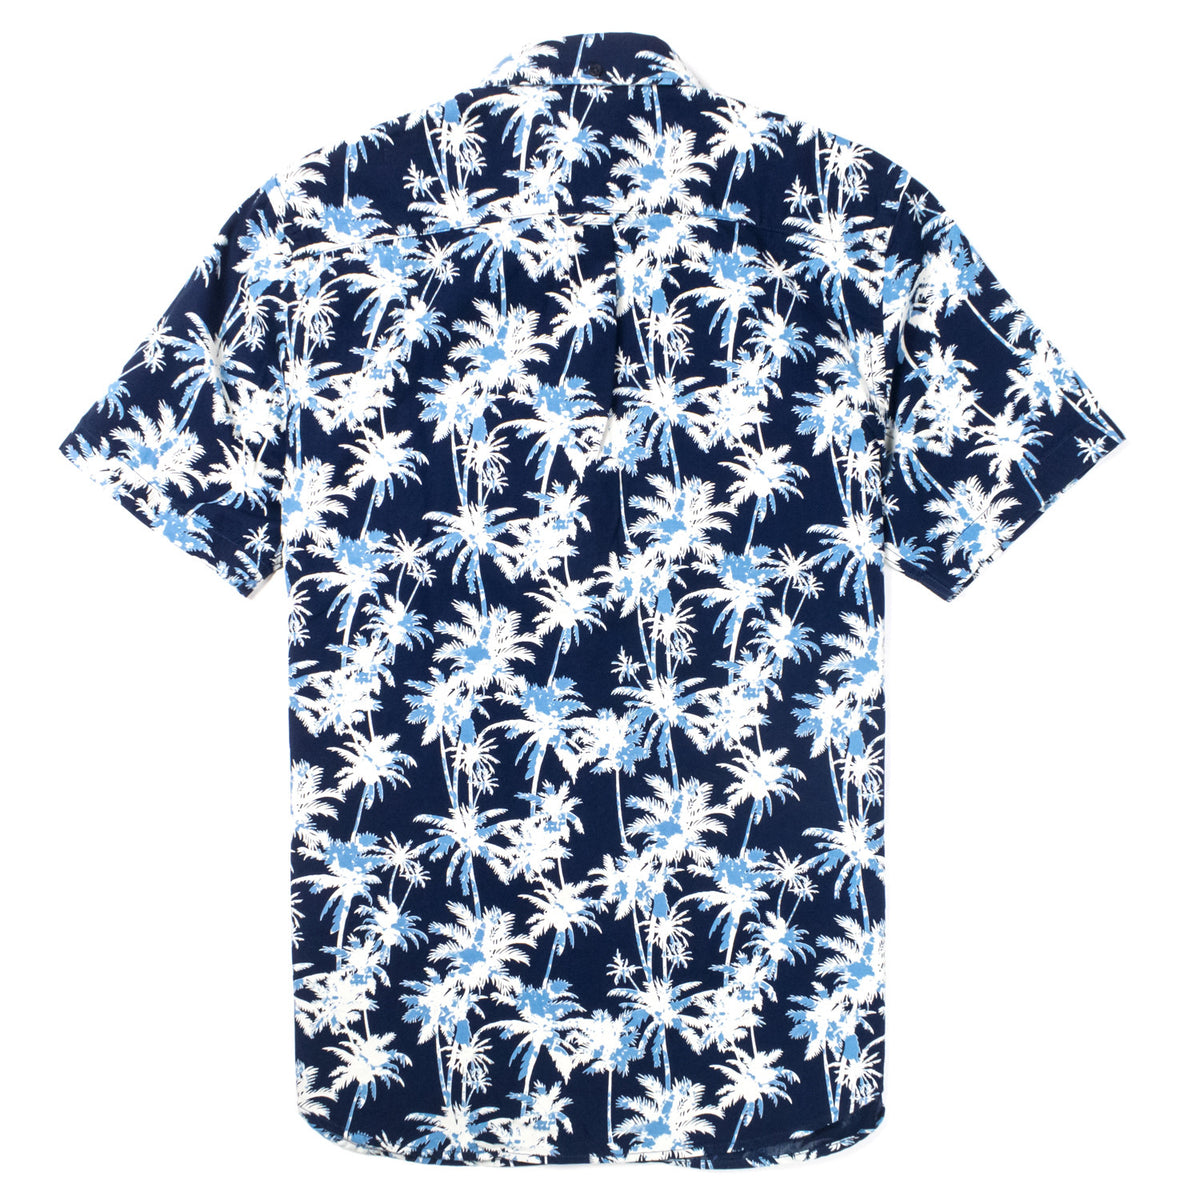 Edwin - Standard Ss Shirt - Indigo Palm